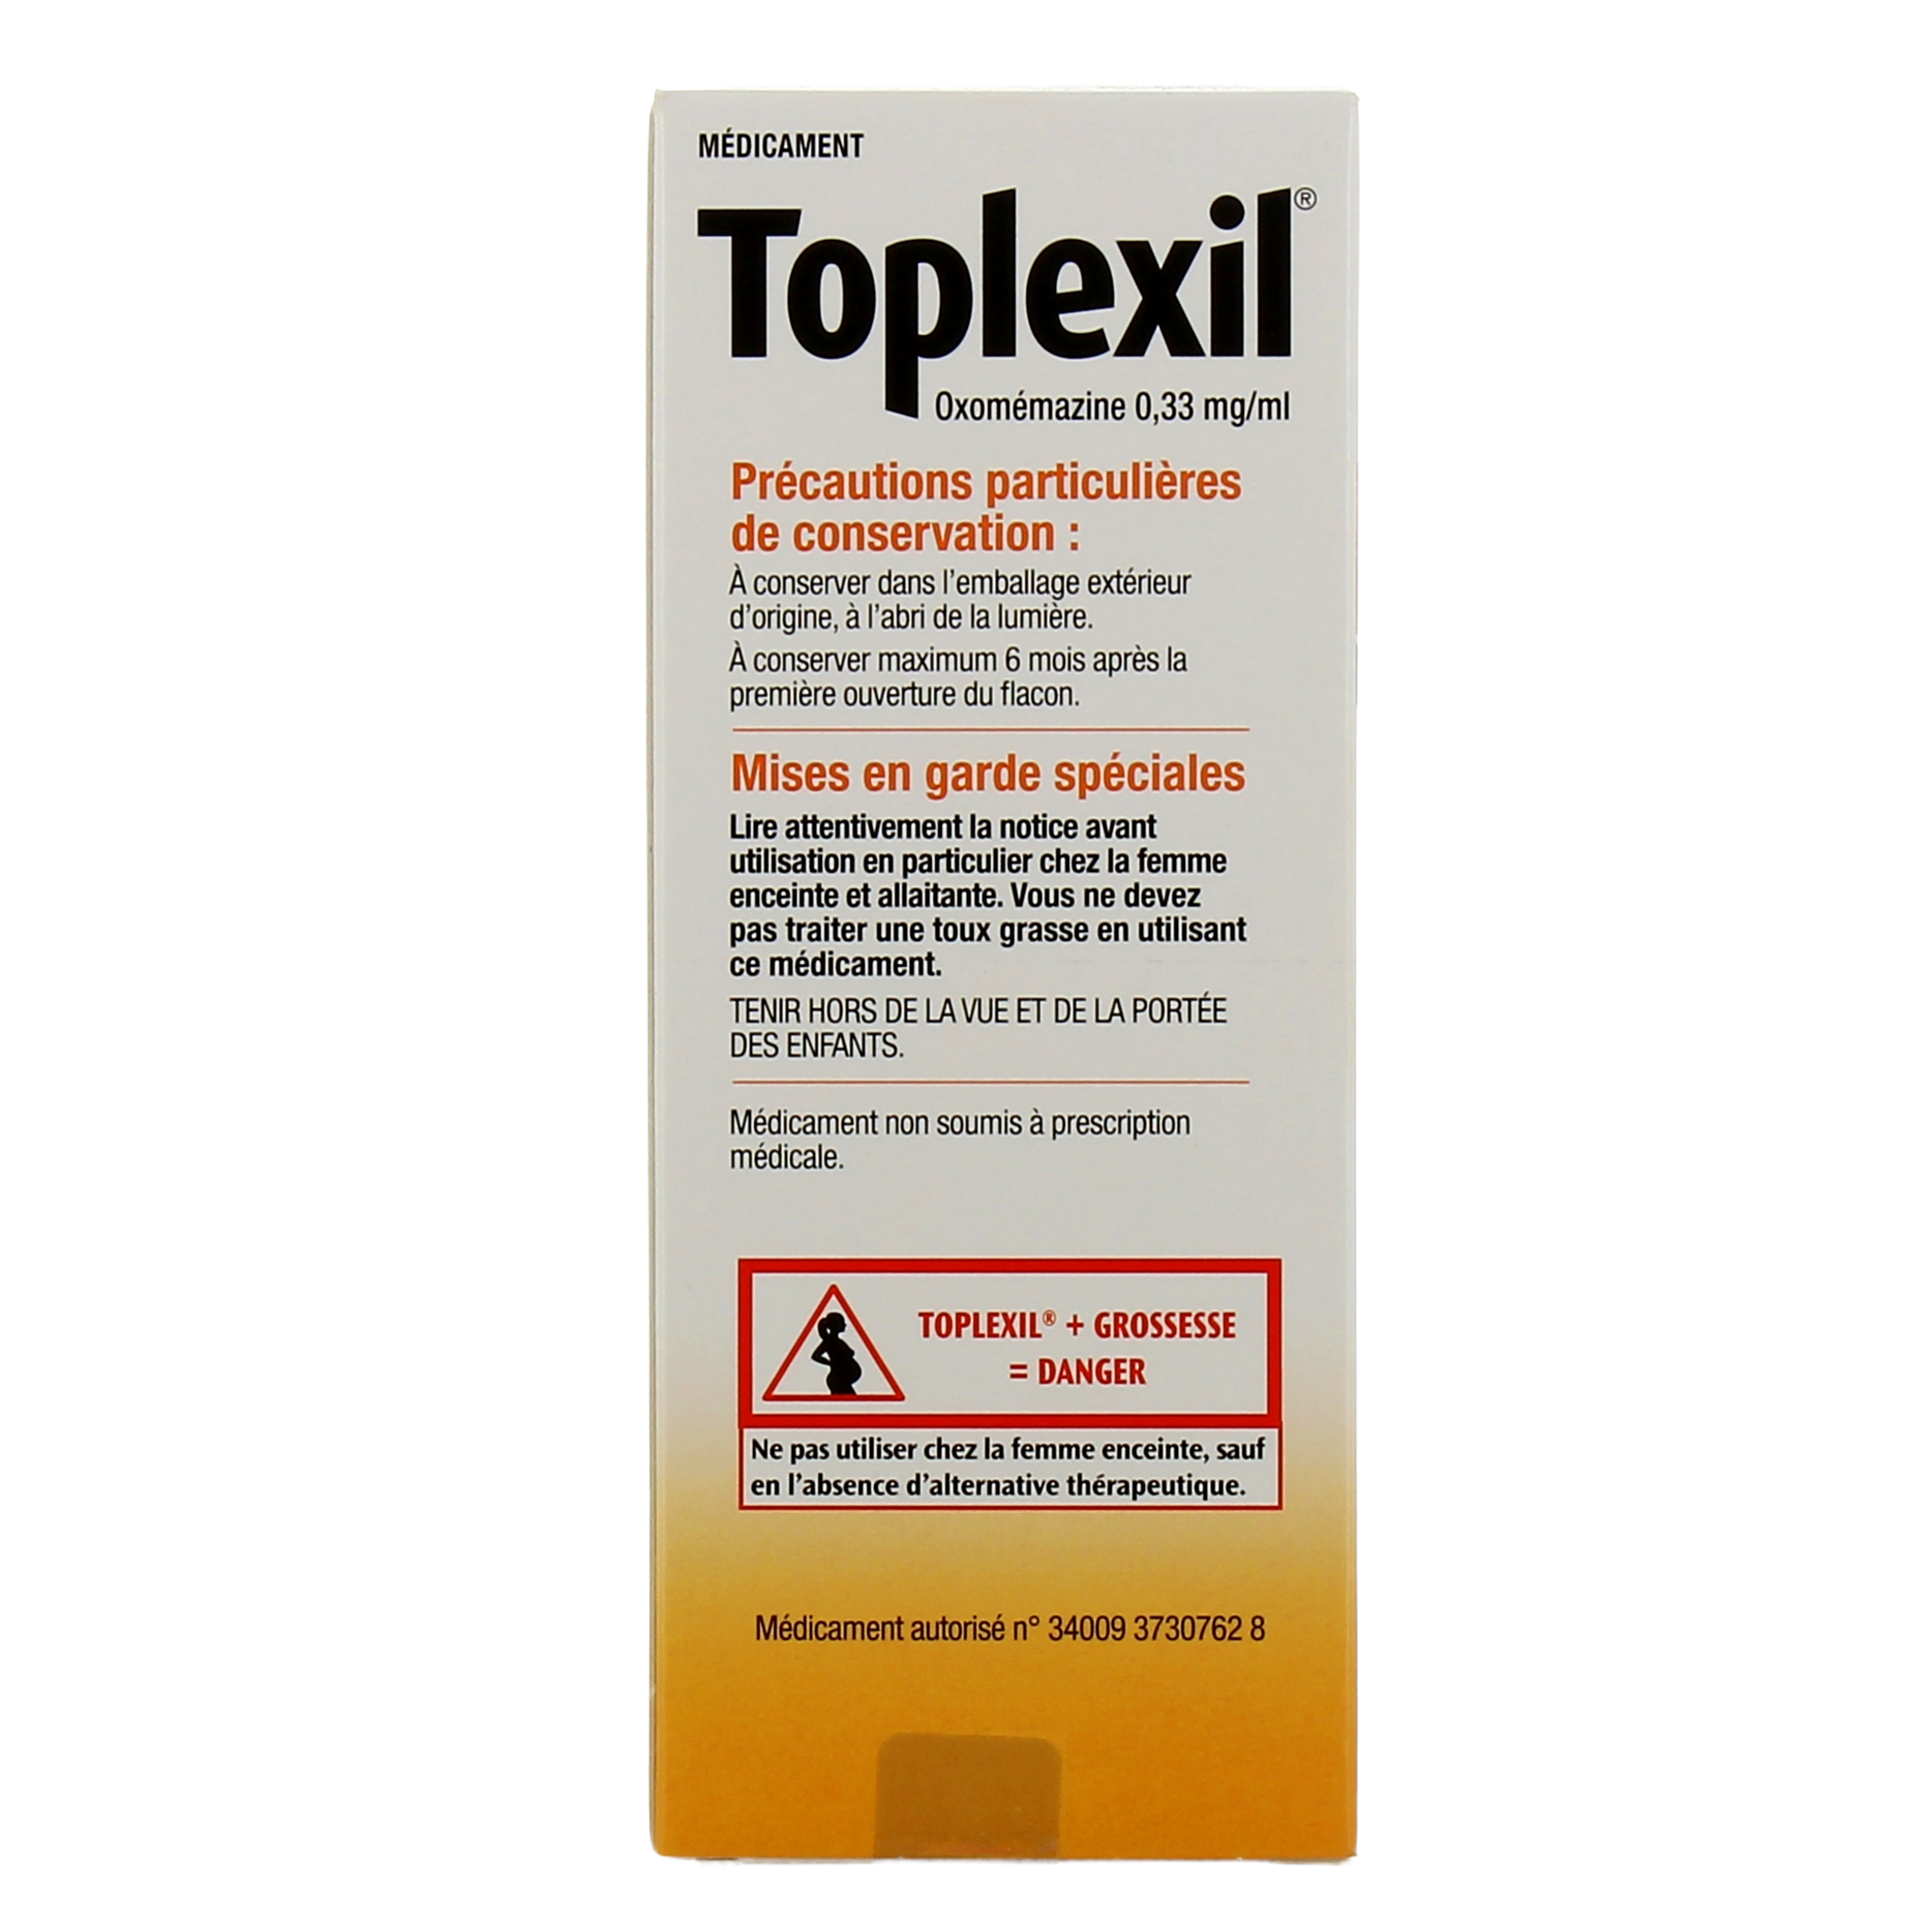 Toplexil sirop toux sèche et irritative - Médicament antitussif